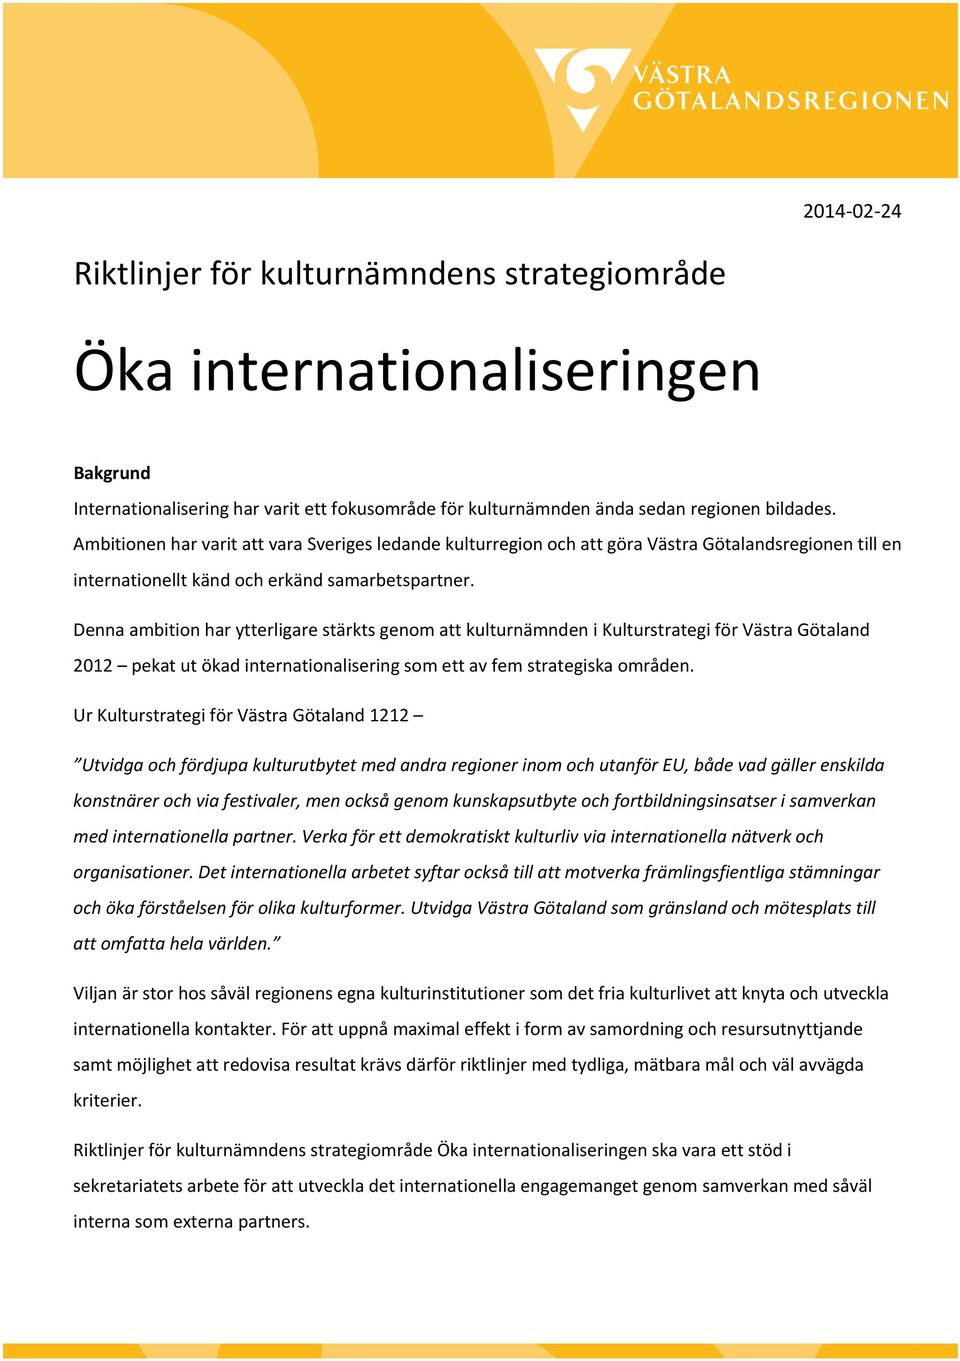 Denna ambition har ytterligare stärkts genom att kulturnämnden i Kulturstrategi för Västra Götaland 2012 pekat ut ökad internationalisering som ett av fem strategiska områden.